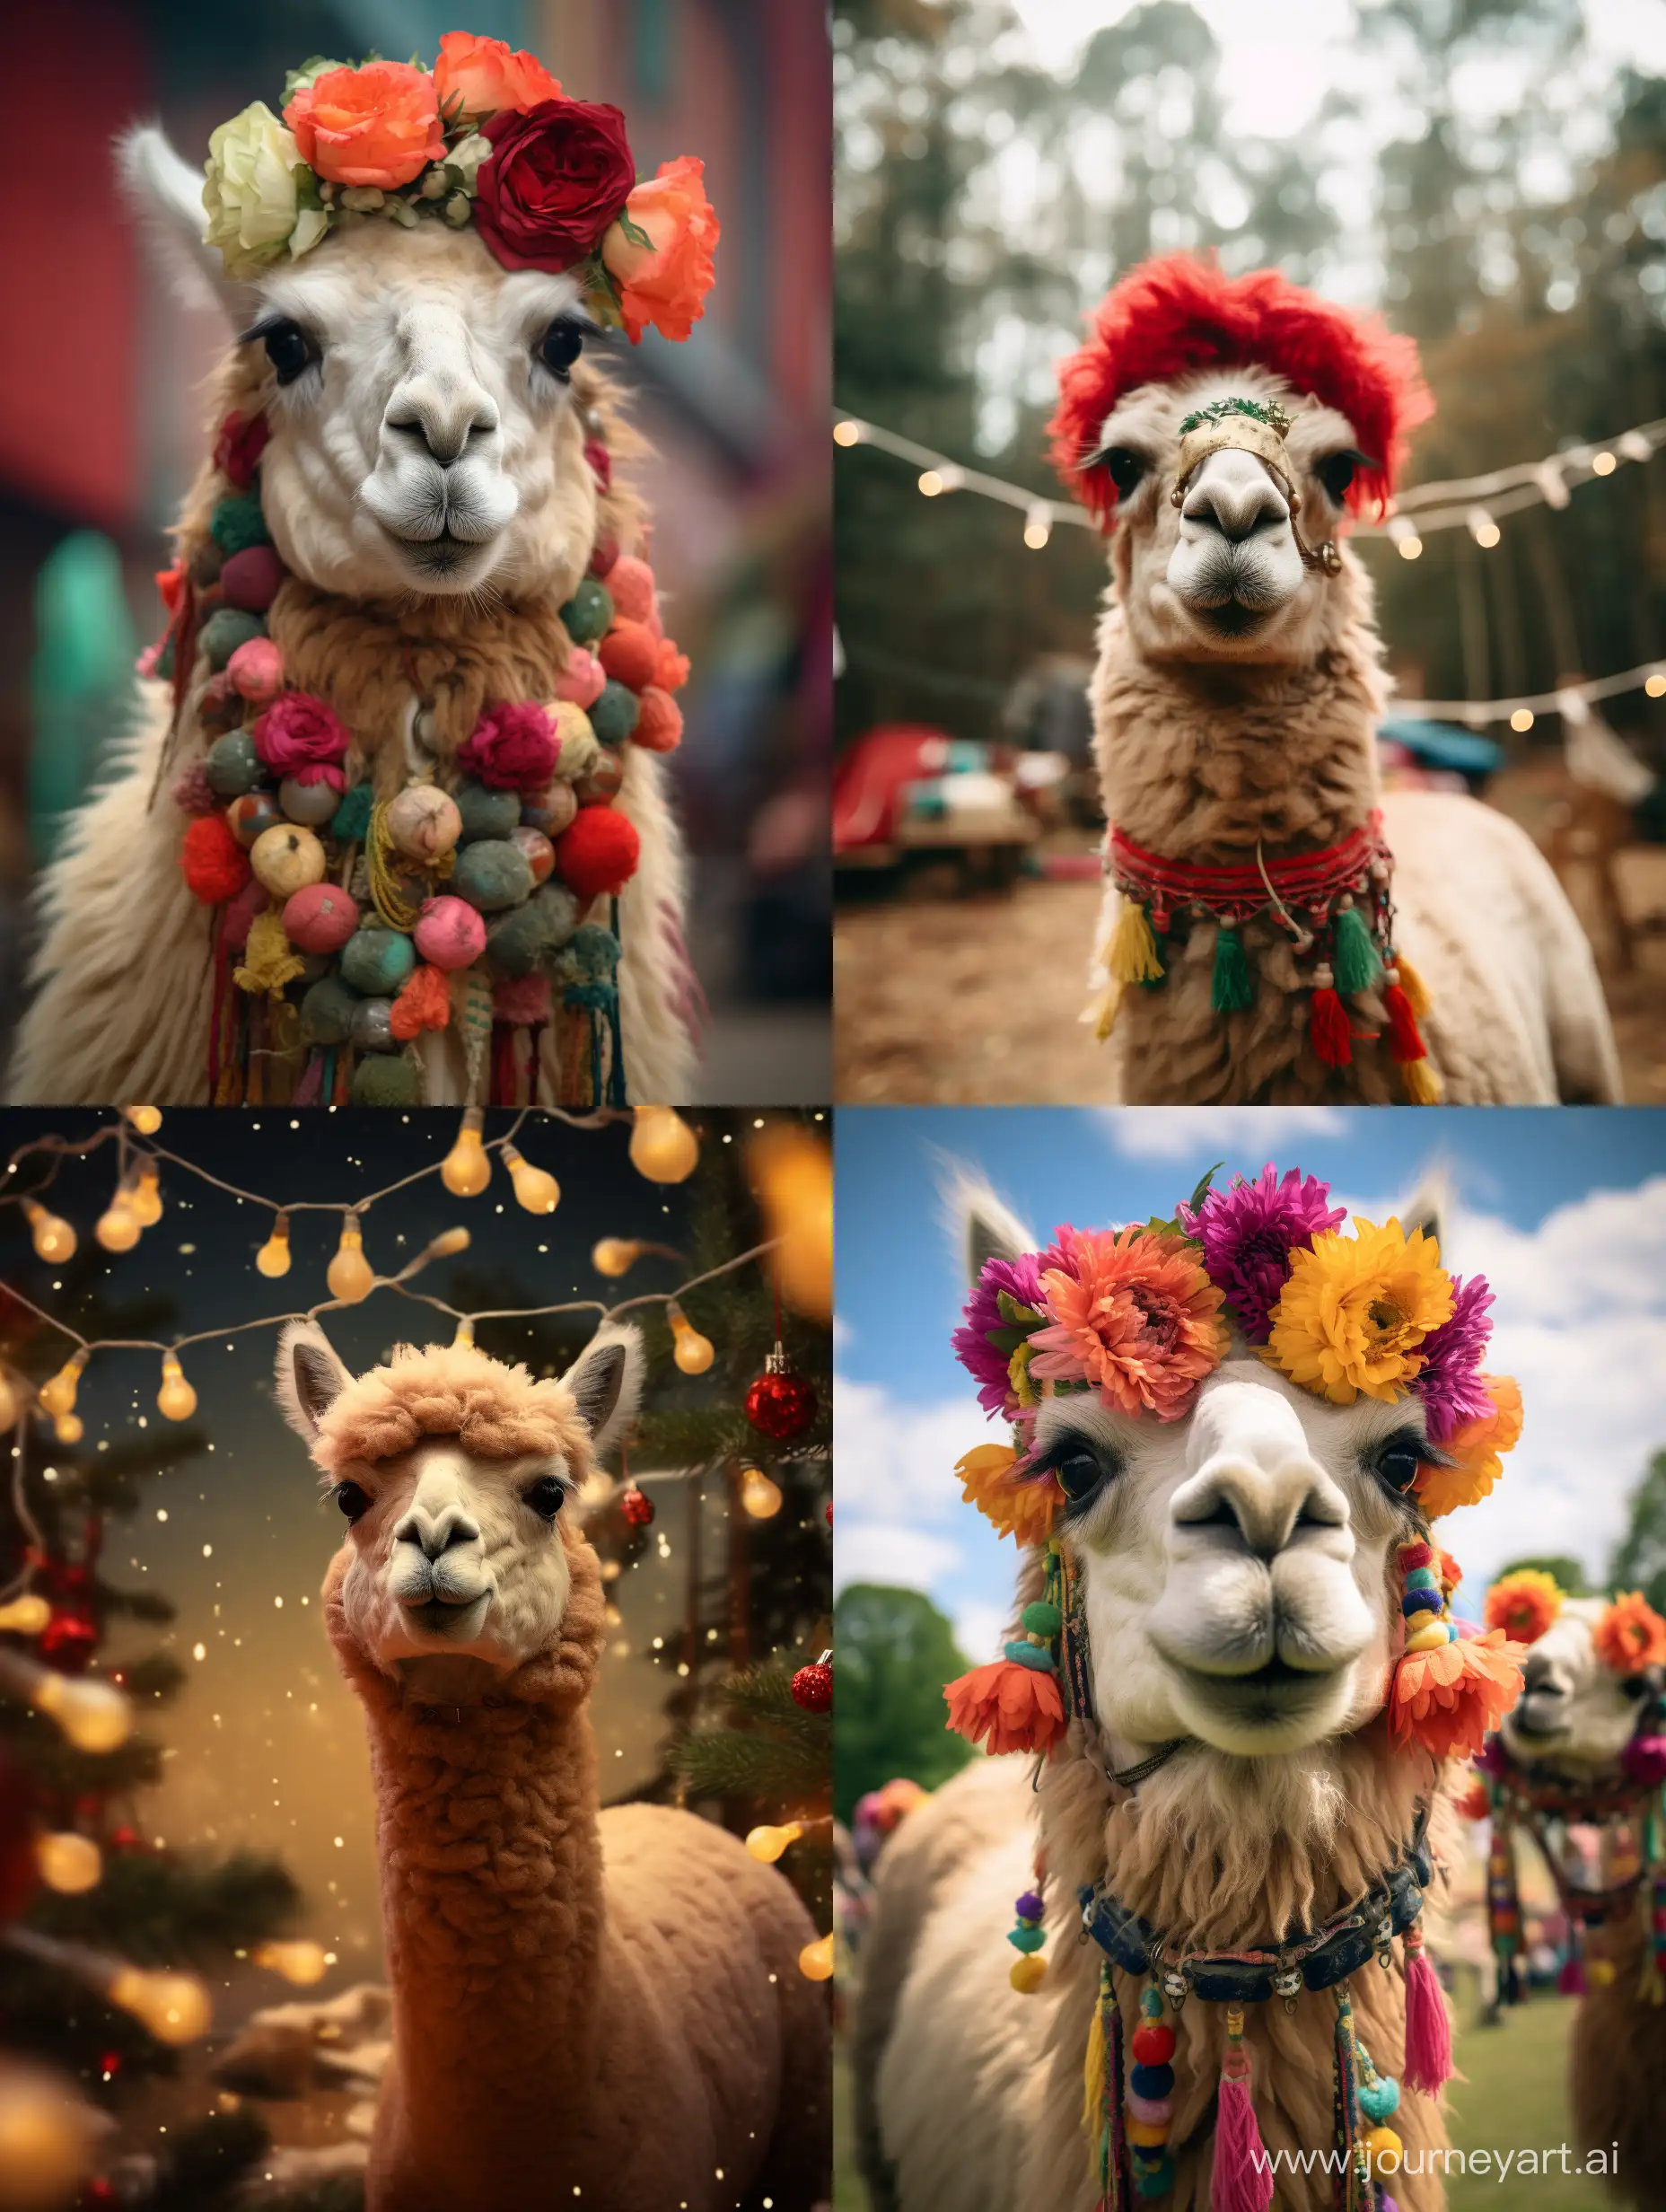 Festive-Alpaca-Portrait-High-Detail-Professional-Photo